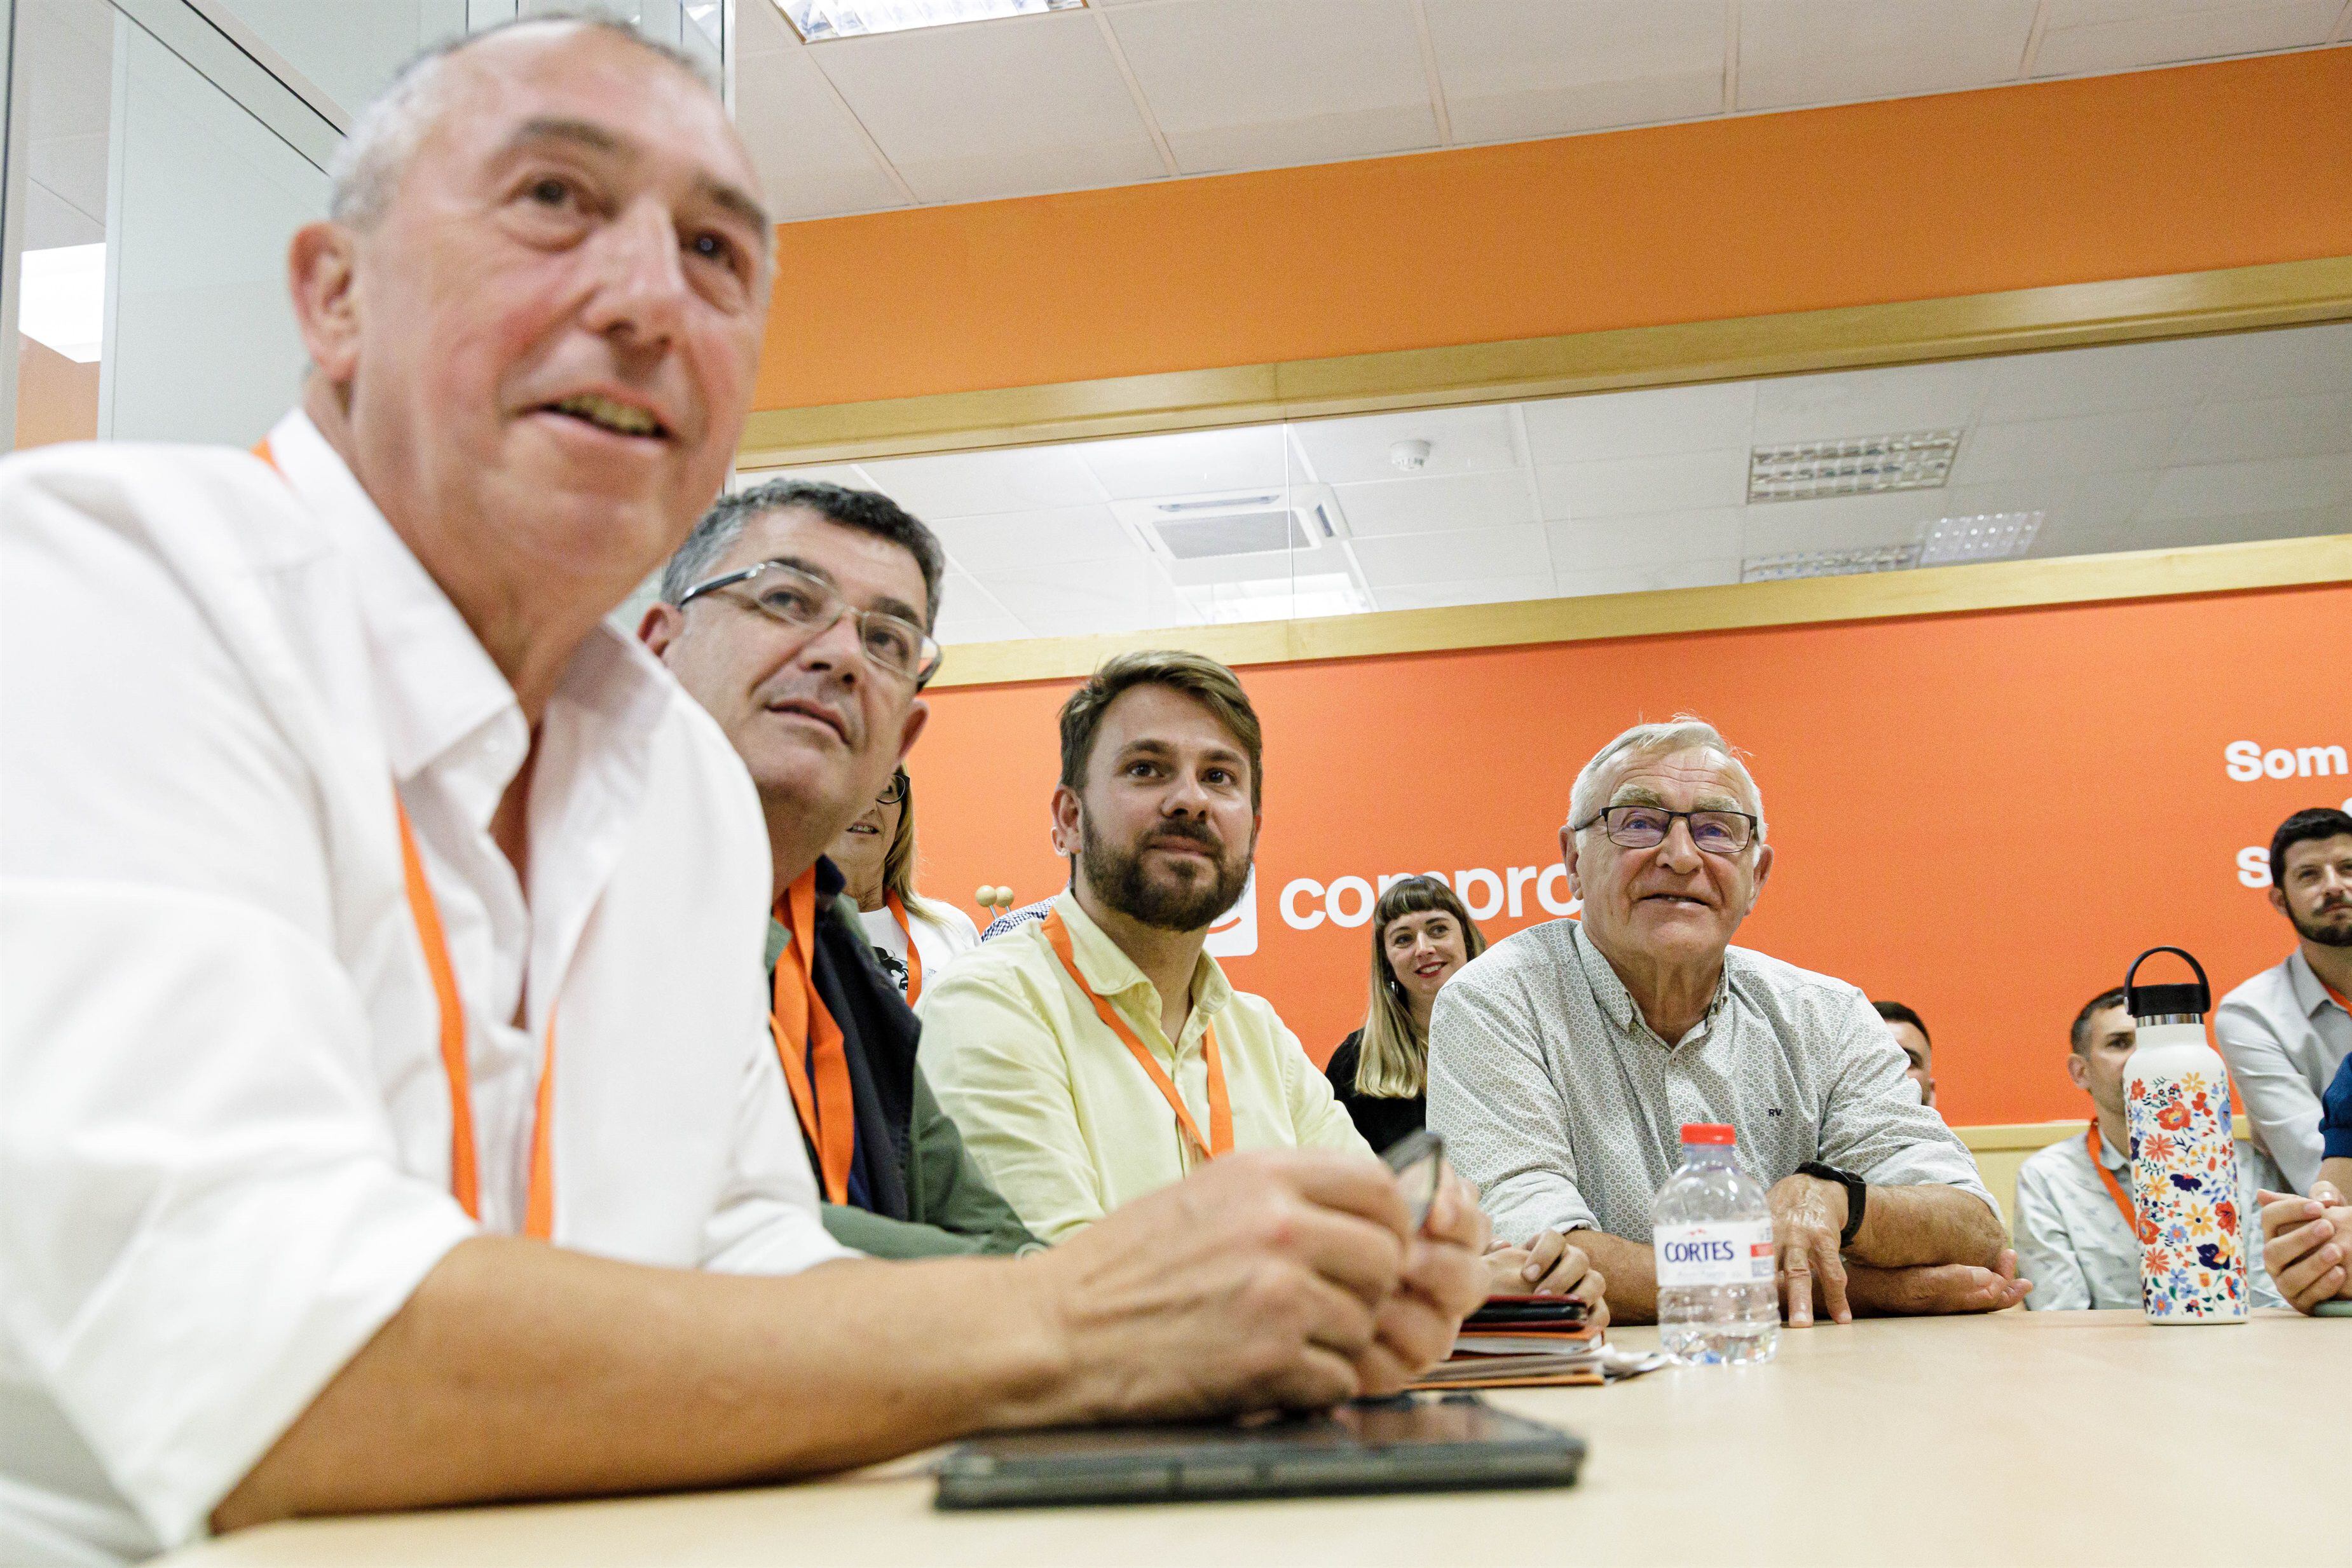 El candidato de Compromís a la Generalitat valenciana, Joan Baldoví (a la izquierda), y el alcalde de Valencia y candidato a la reelección, Joan Ribó (a la derecha), en la sede del partido siguiendo la jornada electoral.